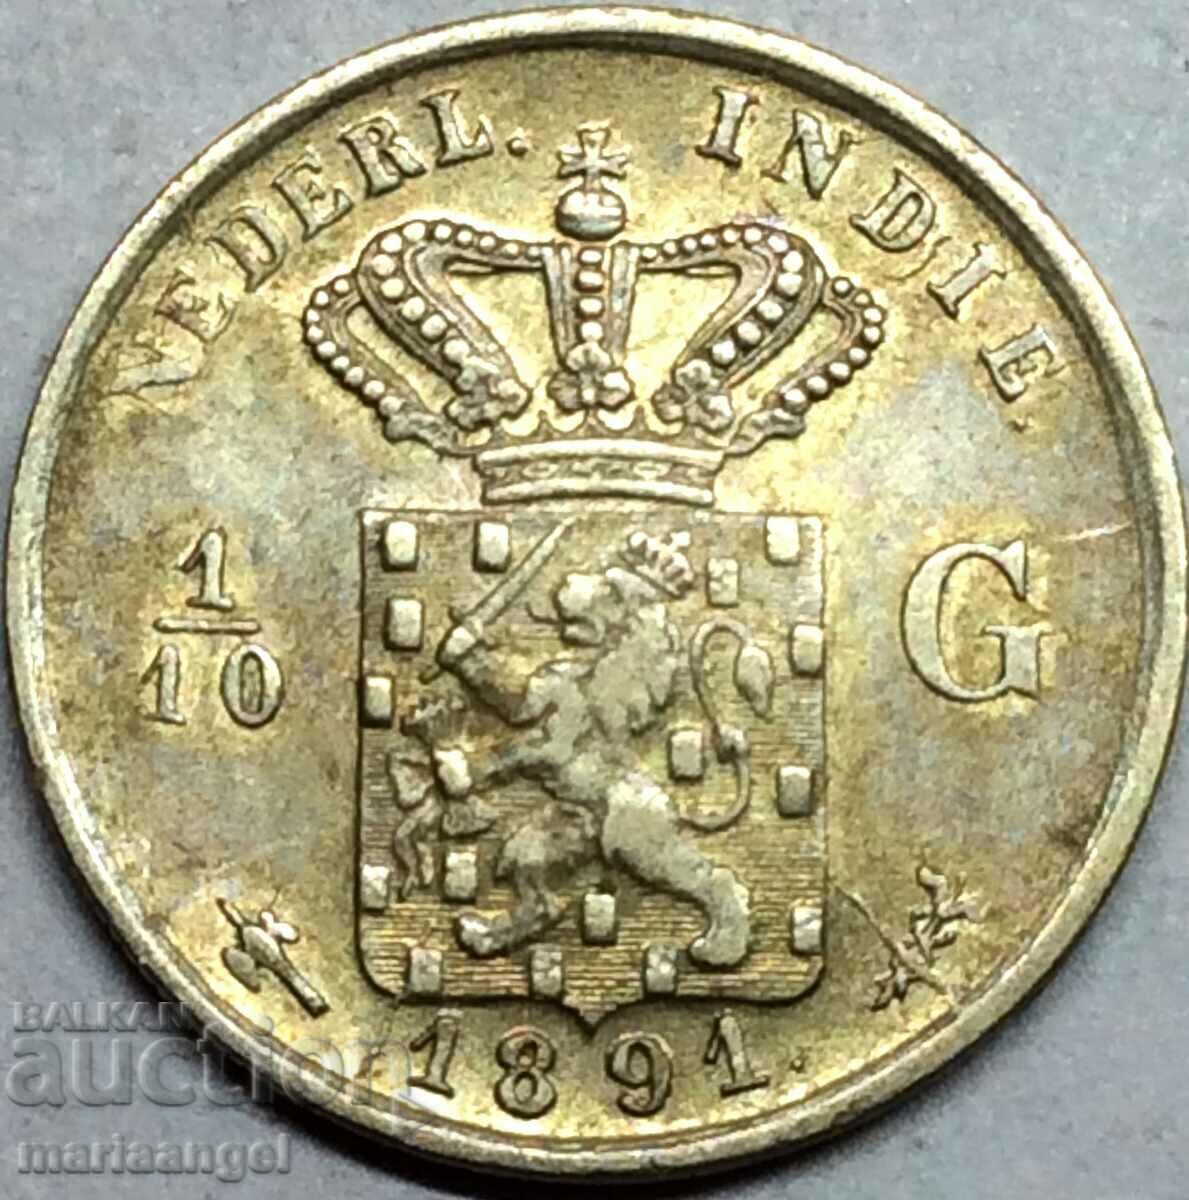 Țările de Jos 1/10 Gulden 1891 Argint Aur Patină